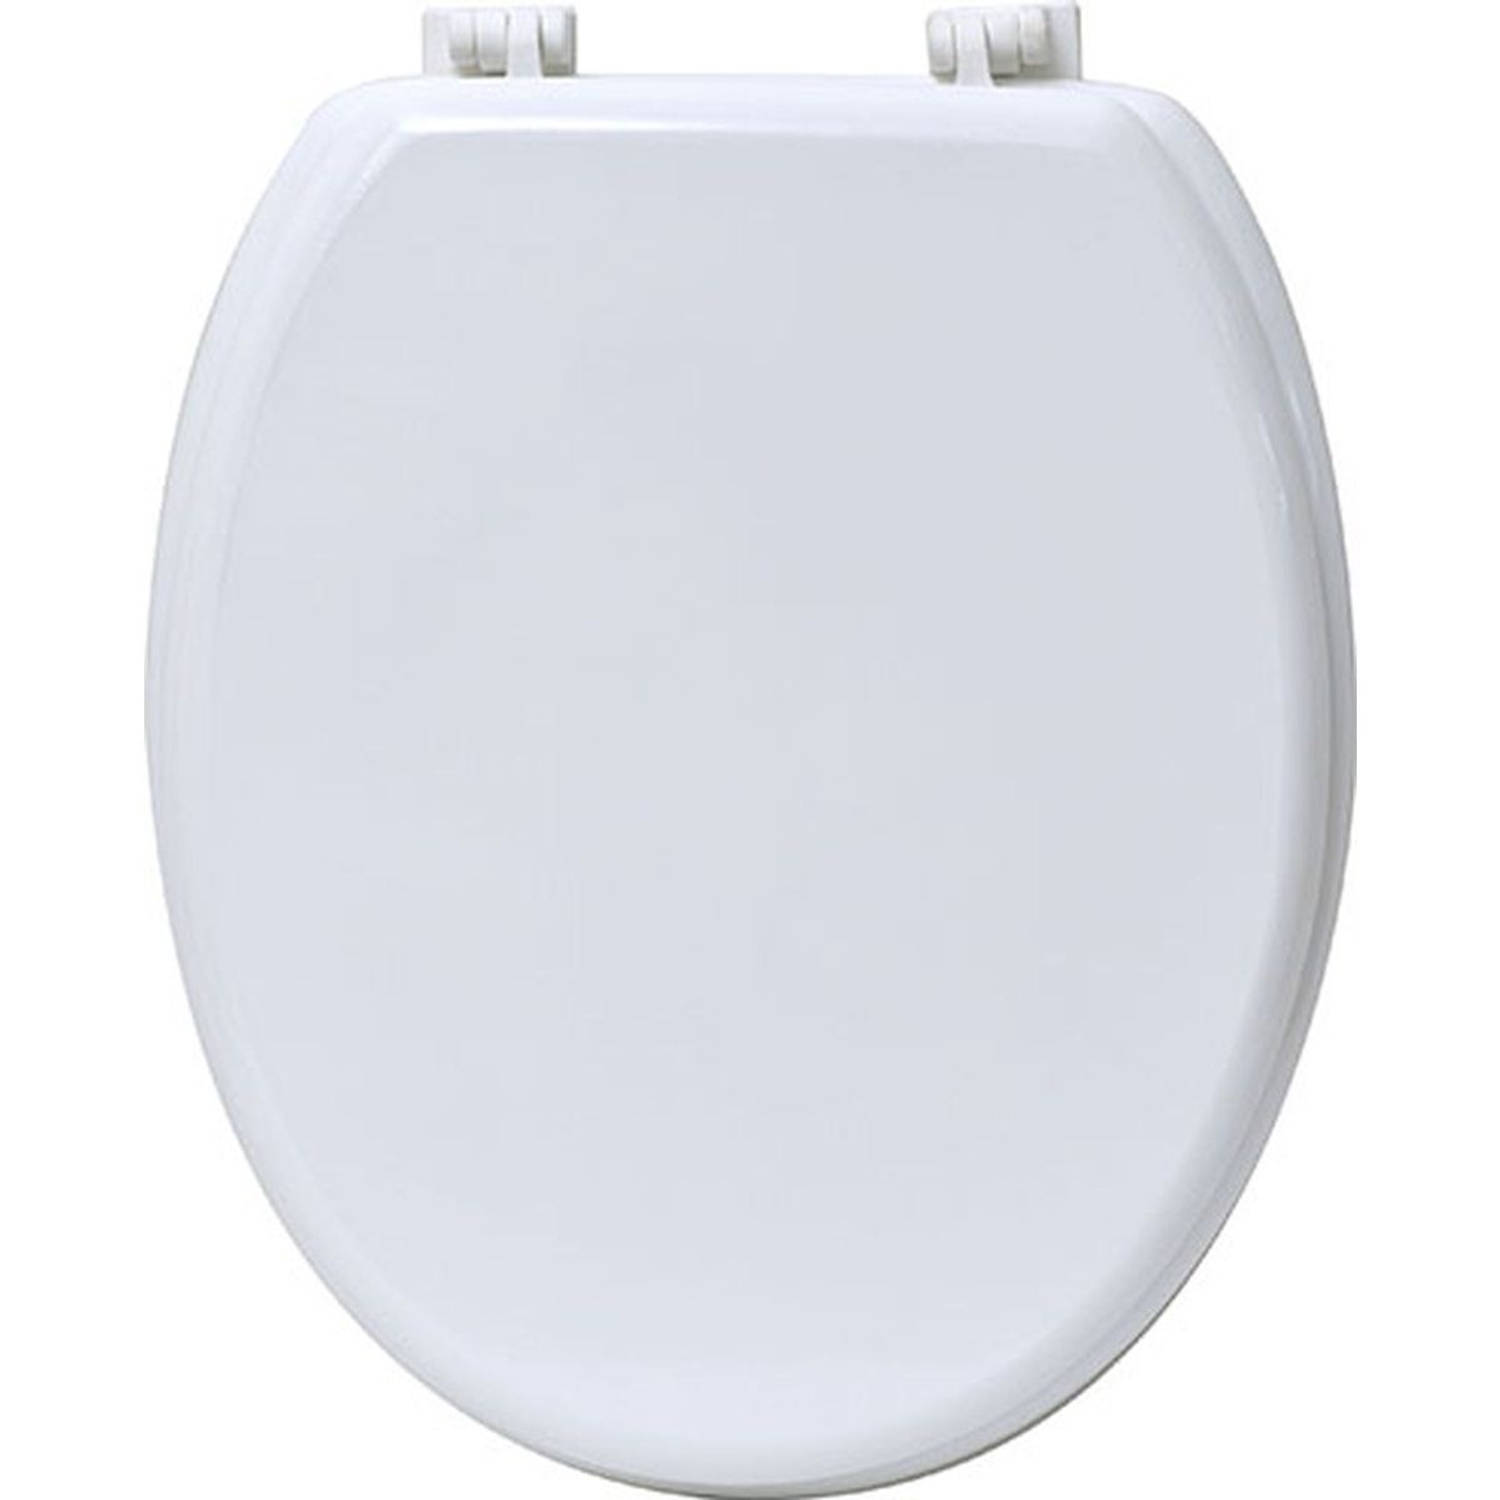 Gebor - Praktische Toiletbril Van Mdf - Wit - 18inch - 37,5x46cm - Wc Bril - Badkamer - Toilet - Met Kunststof